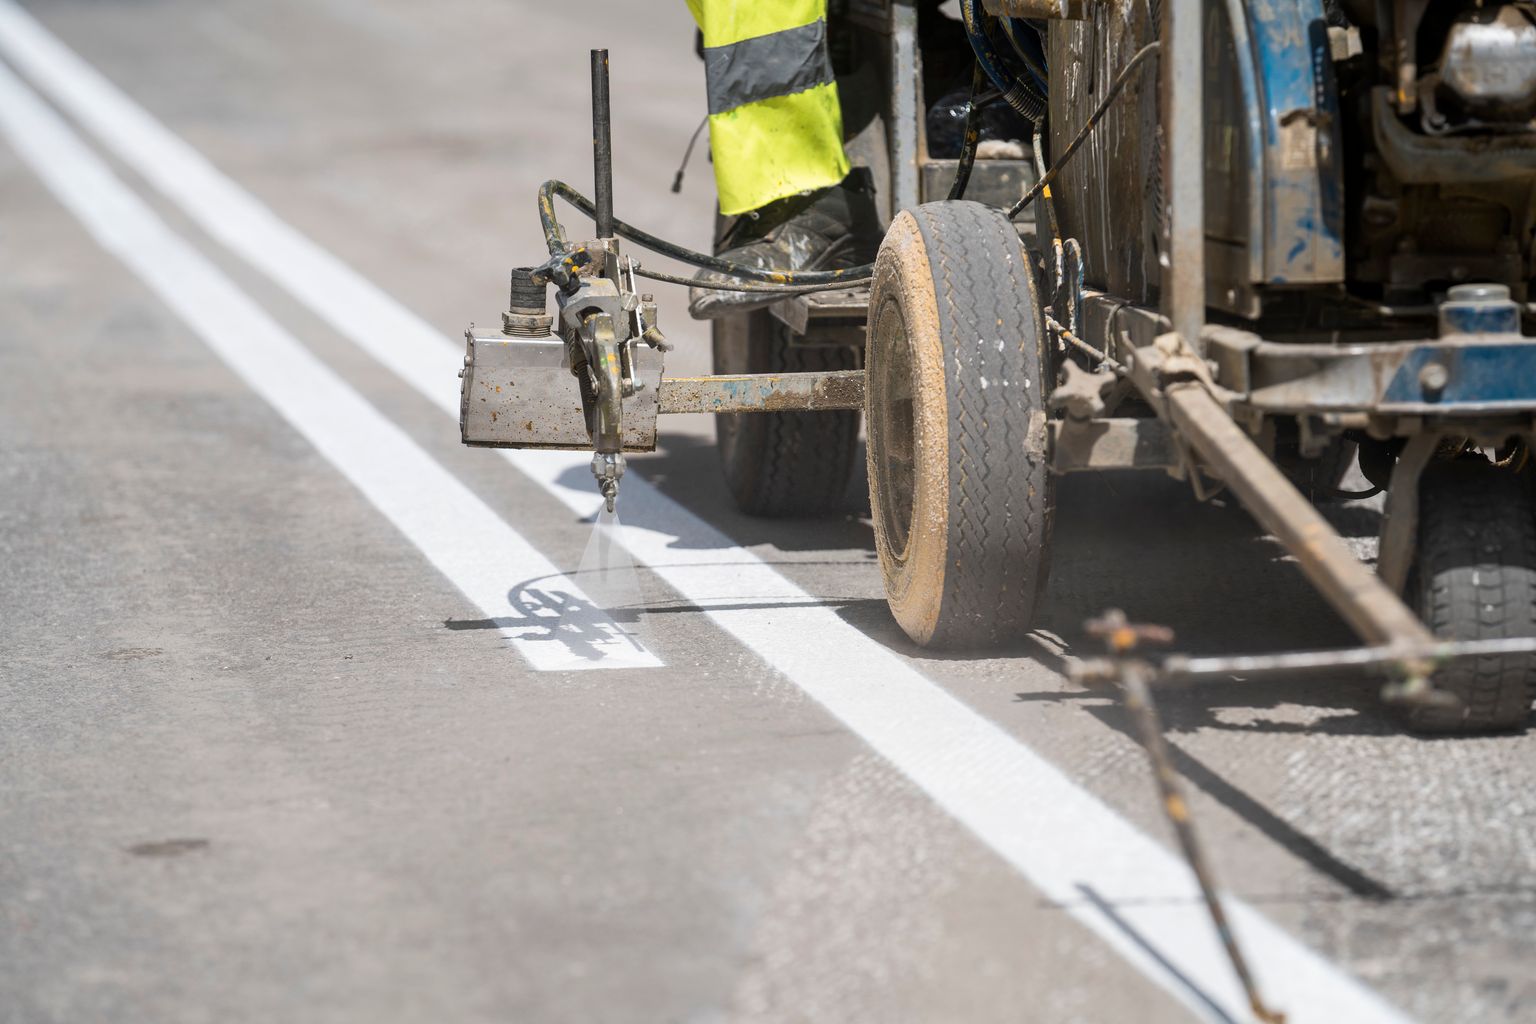 Detall de la màquina que pinta la doble línia contínua sobre l'asfalt de l'obra d'ampliació de voreres de la via Laietana